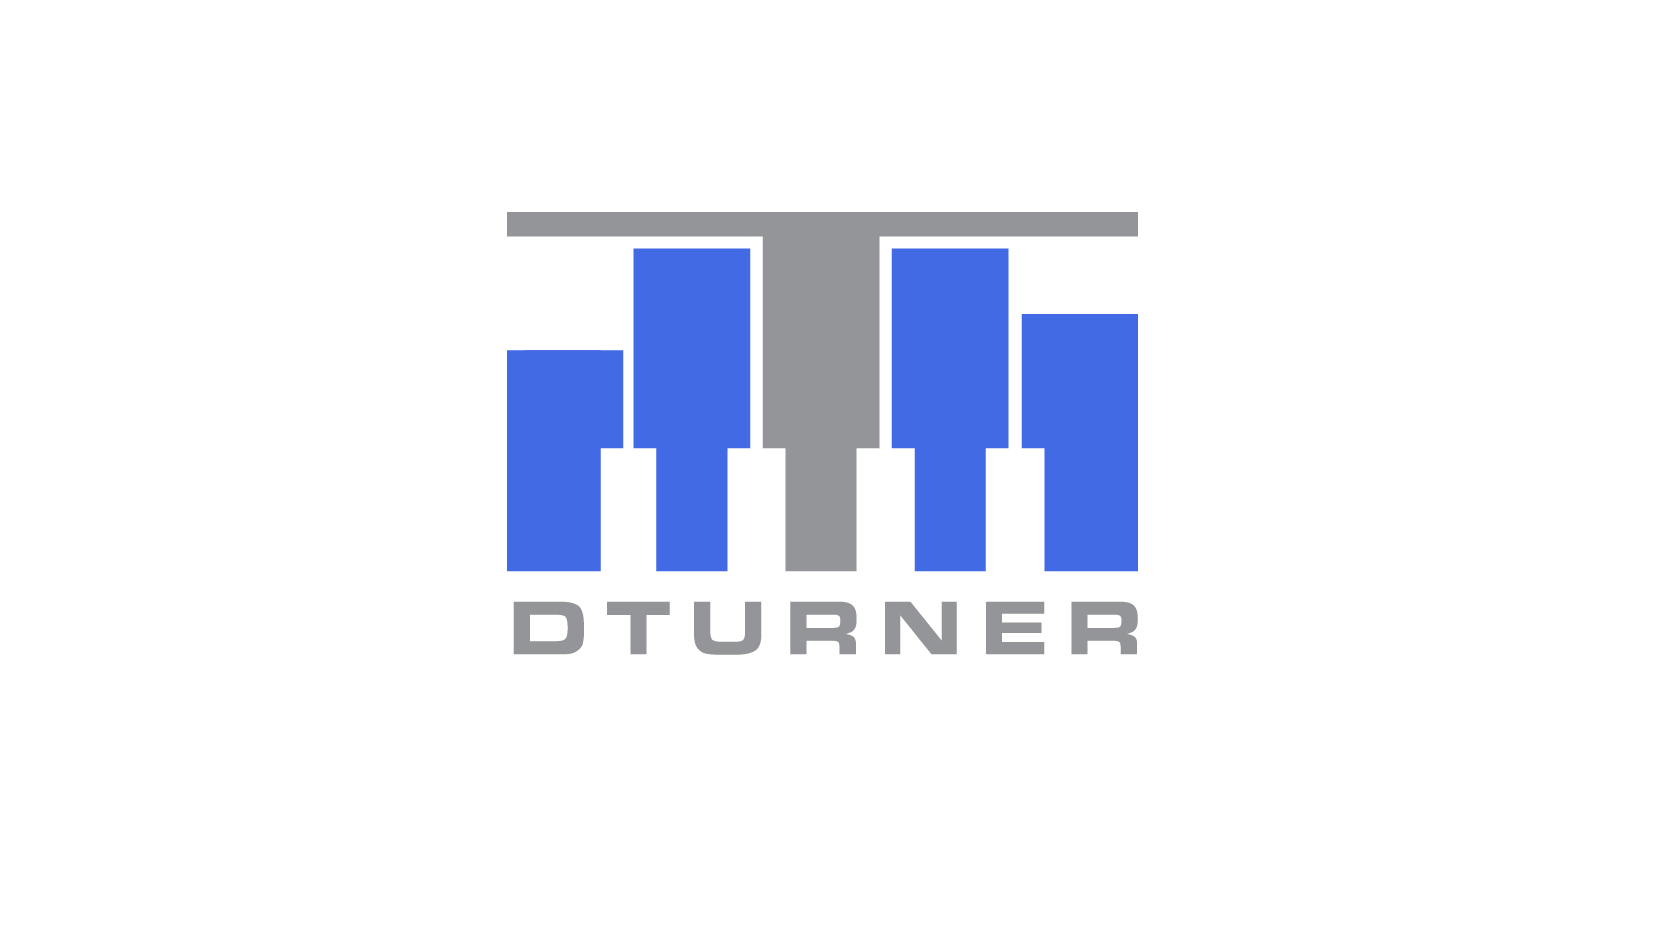 DTURNER MUSIC